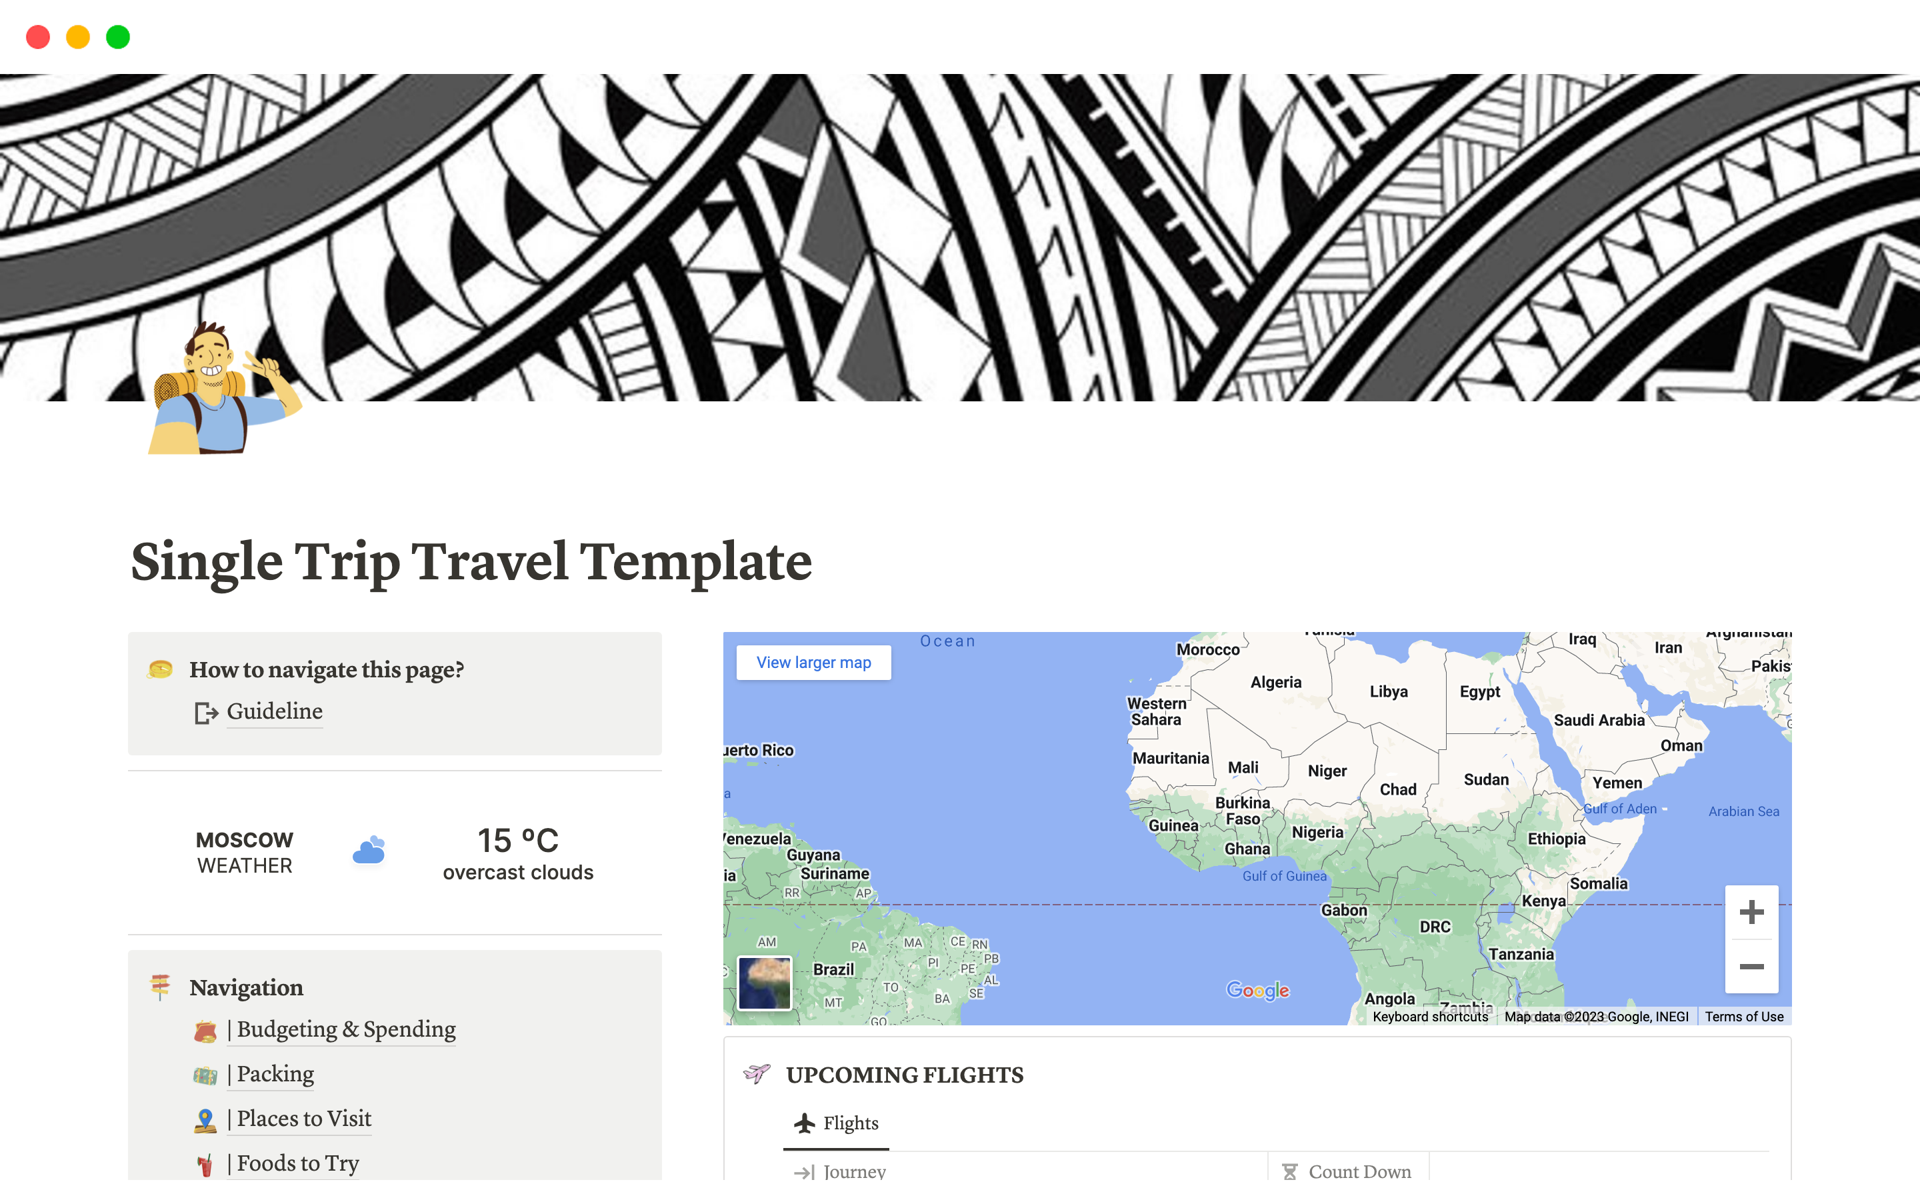 En forhåndsvisning av mal for Travel Template : Planner for Single Trip Journey